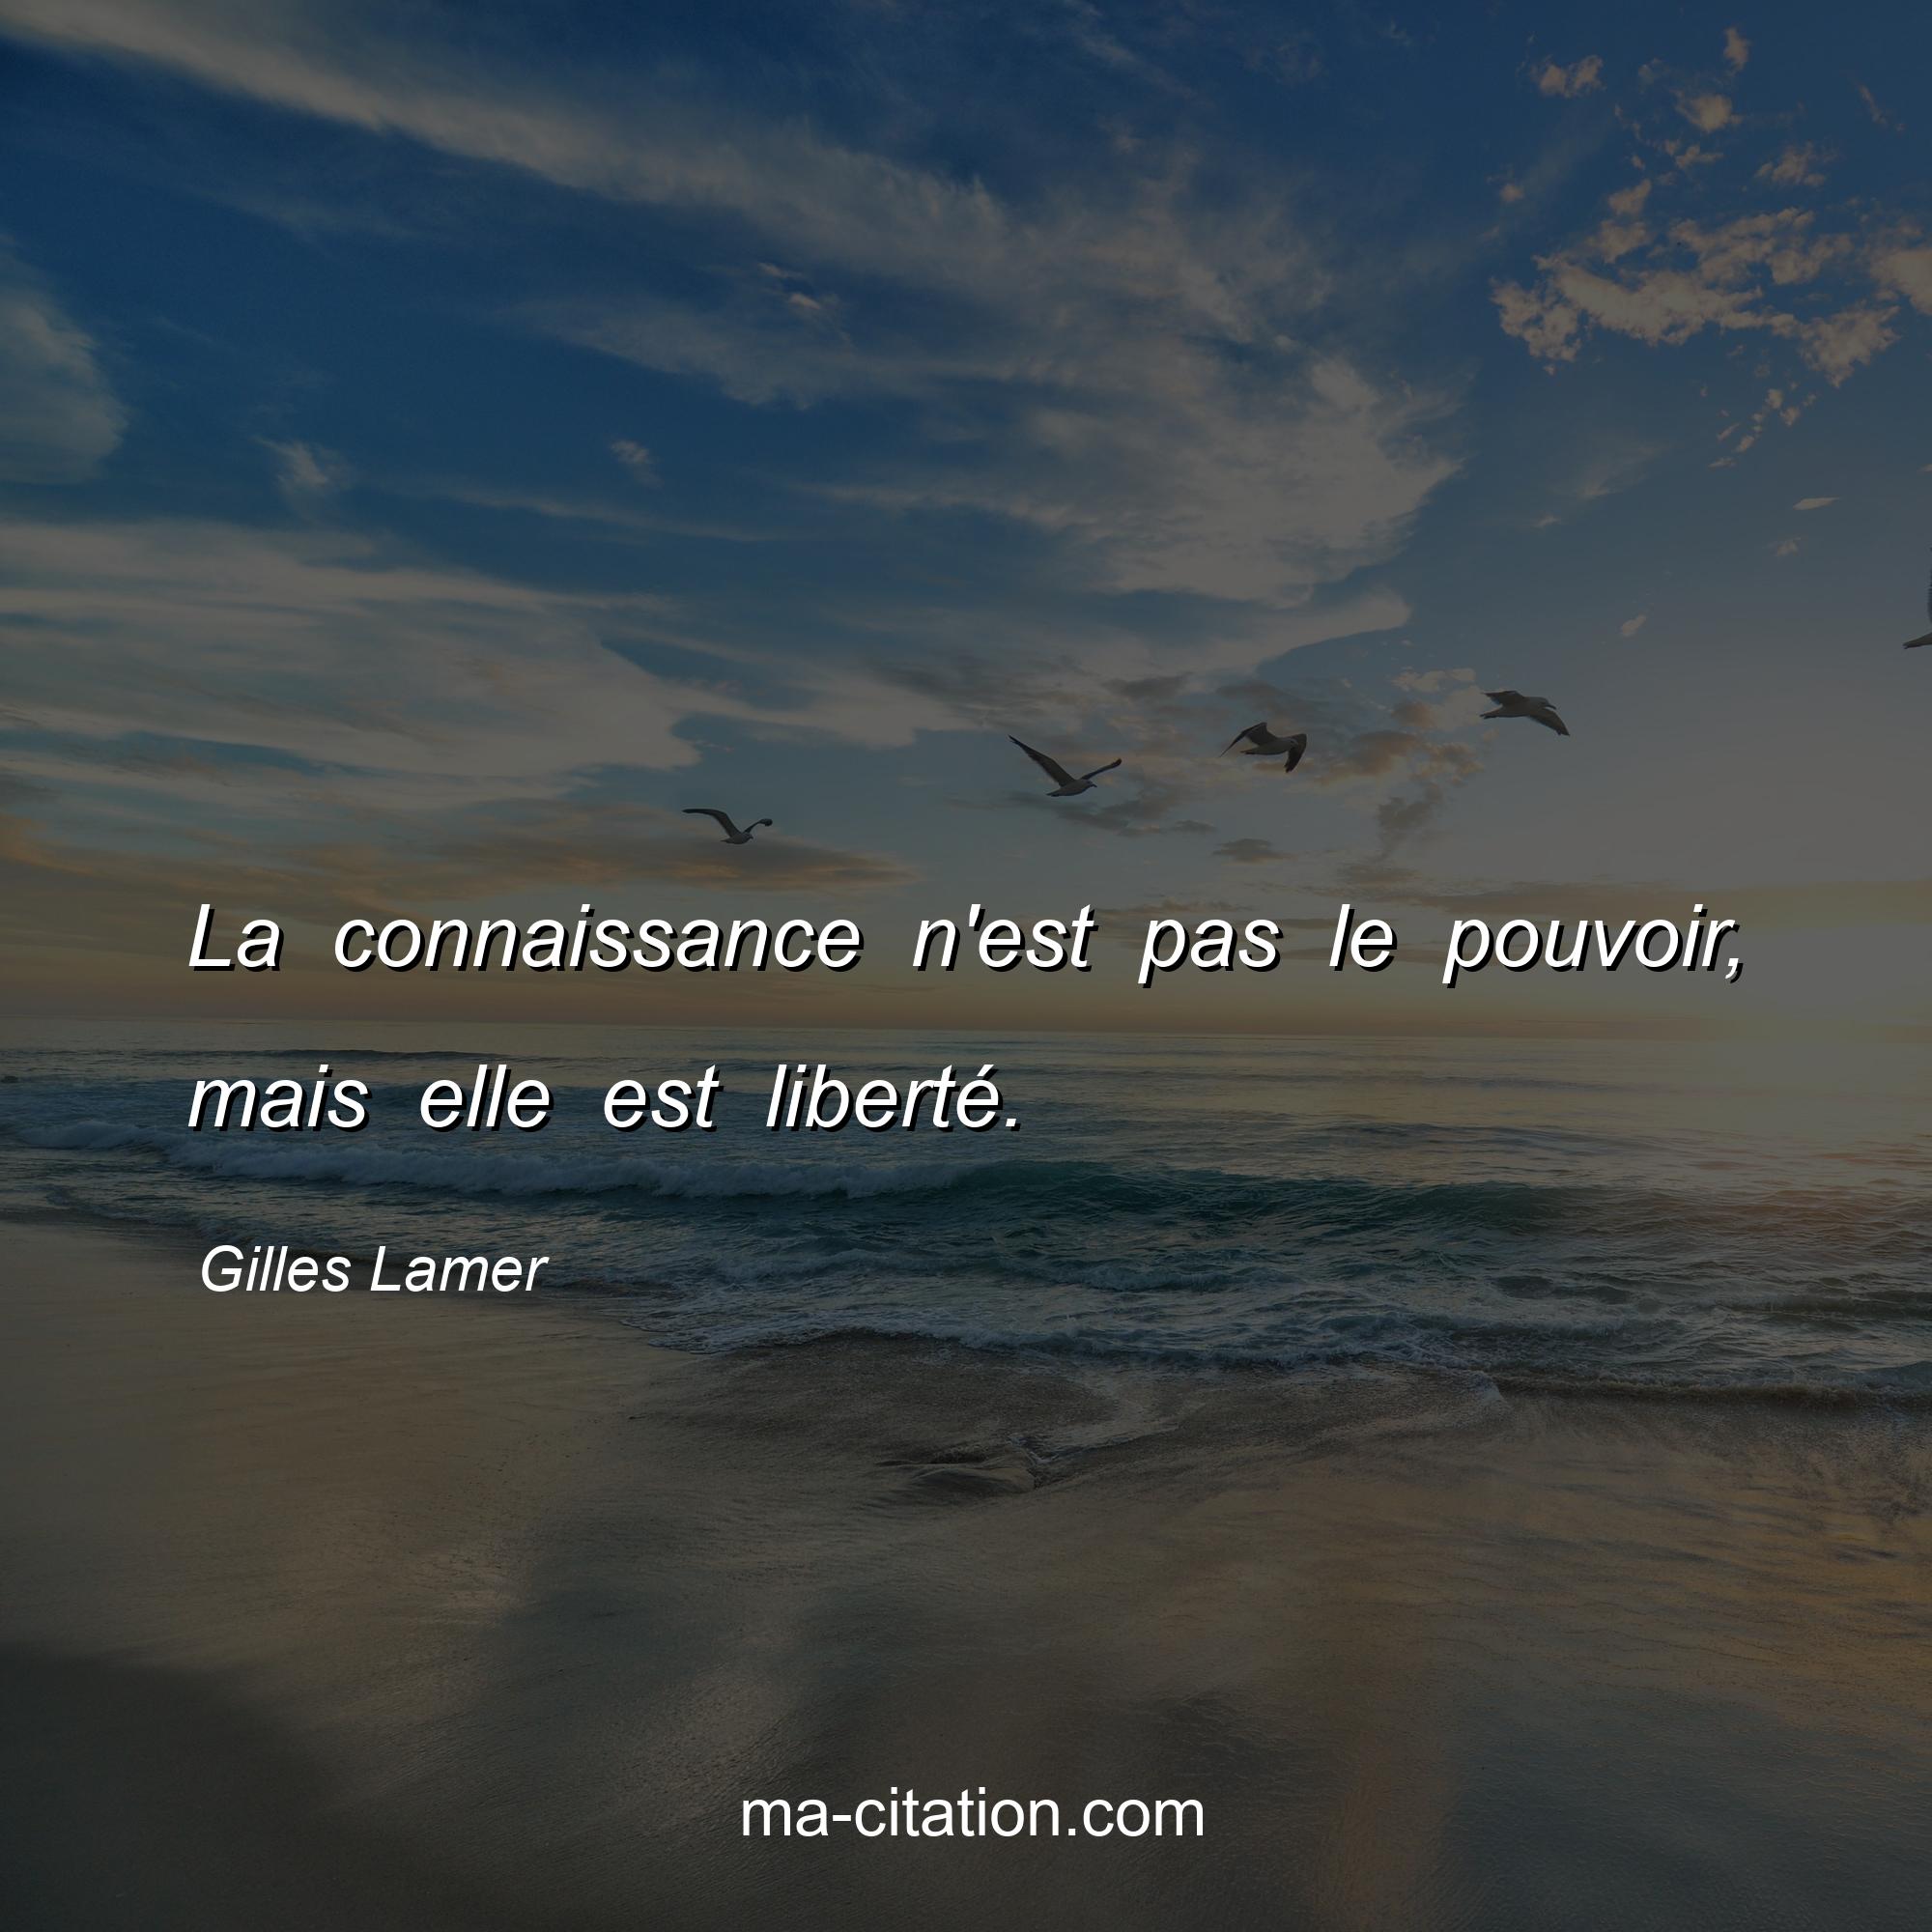 Gilles Lamer : La connaissance n'est pas le pouvoir, mais elle est liberté.